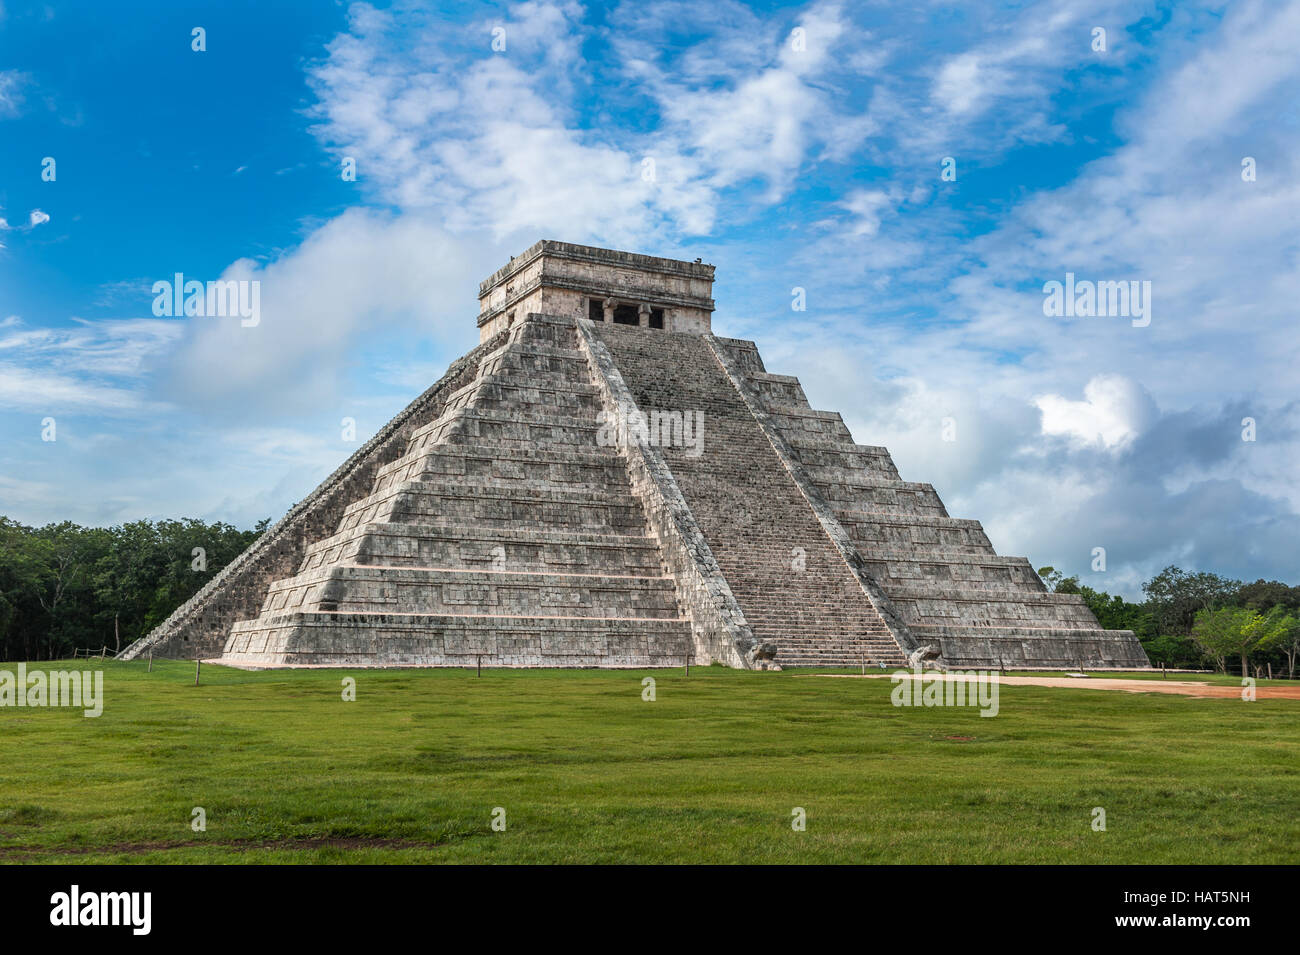 El Castillo ou Temple de la pyramide Kukulkan, Chichen Itza, Yucatan, Mexique Banque D'Images